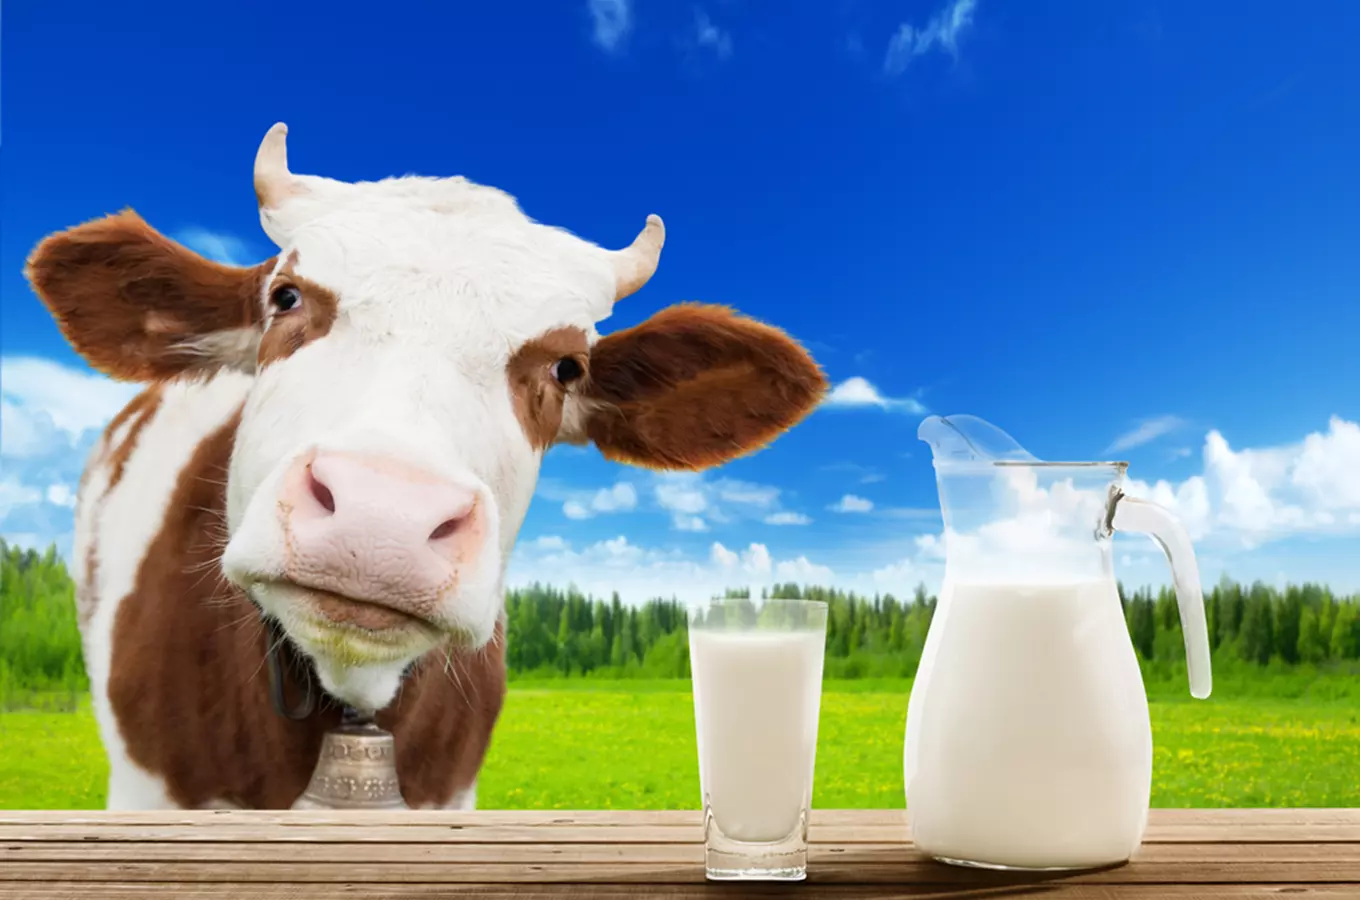 Mlékomaty farmy Kolný v Českých Budějovicích - od kravičky přímo k vám